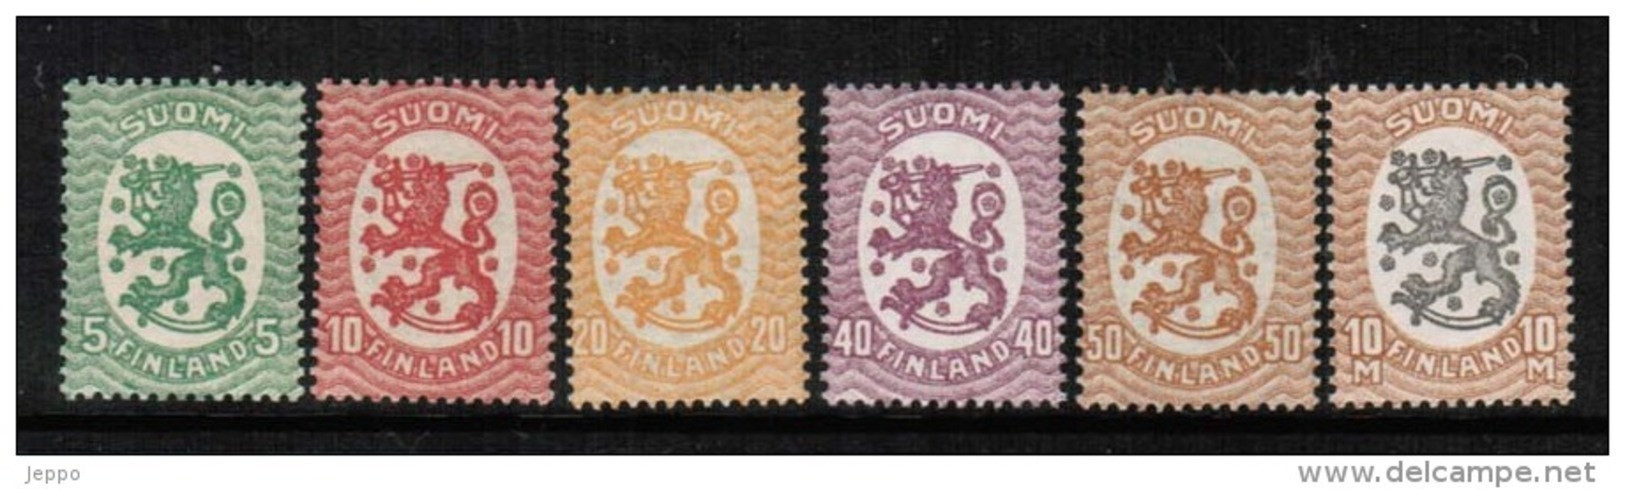 1917 Finland Republic 6 Values Between Michel 68 - 93 MNH **. - Ongebruikt